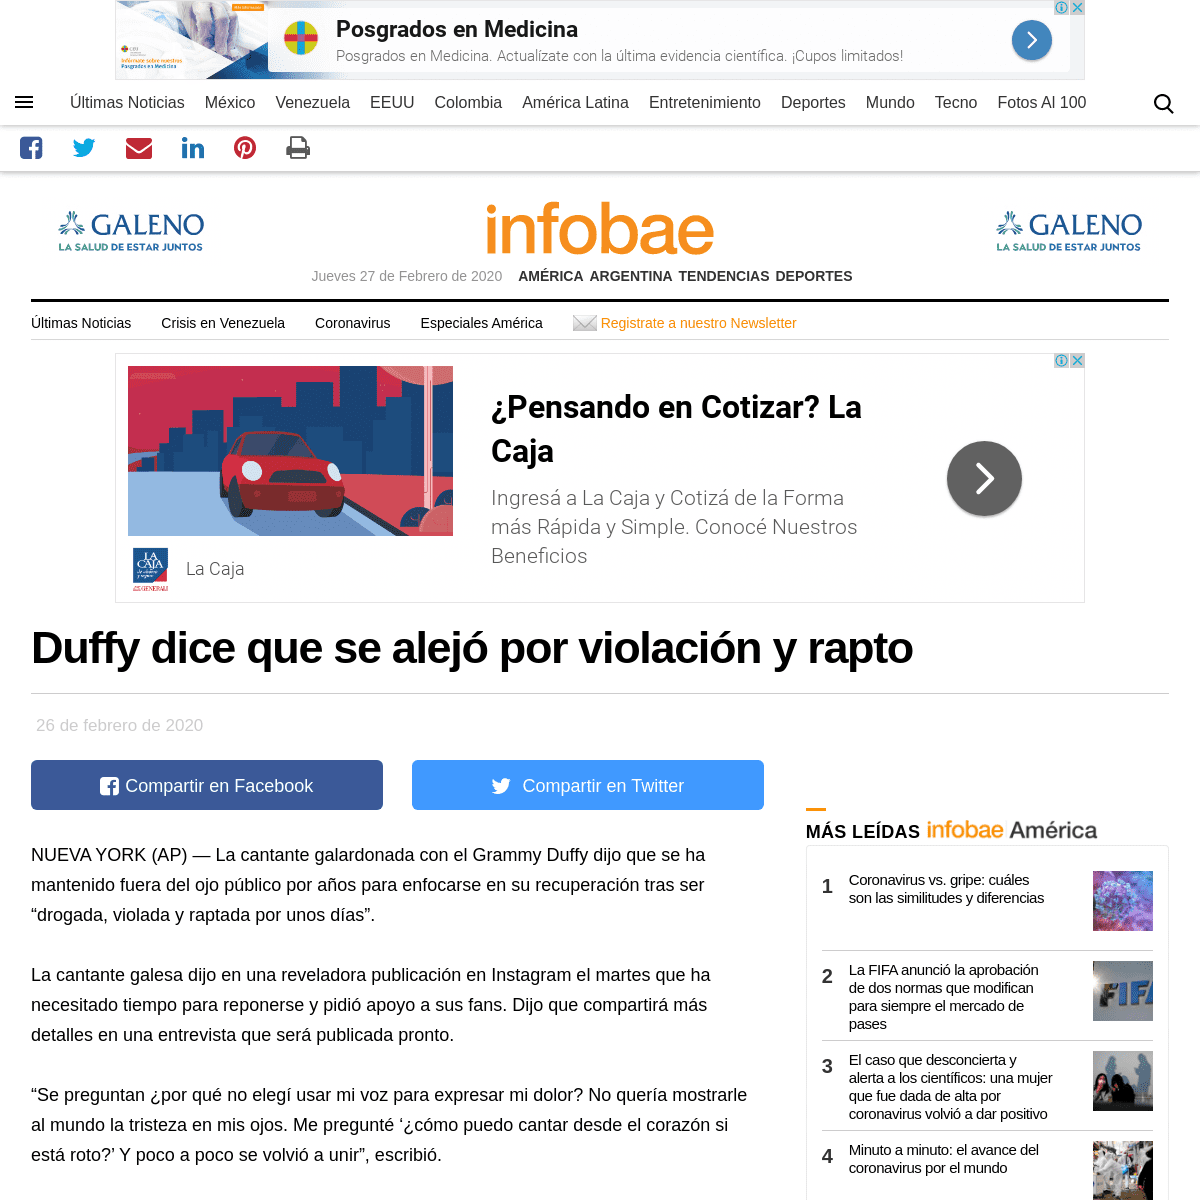 A complete backup of www.infobae.com/america/agencias/2020/02/26/duffy-dice-que-se-alejo-por-violacion-y-rapto/